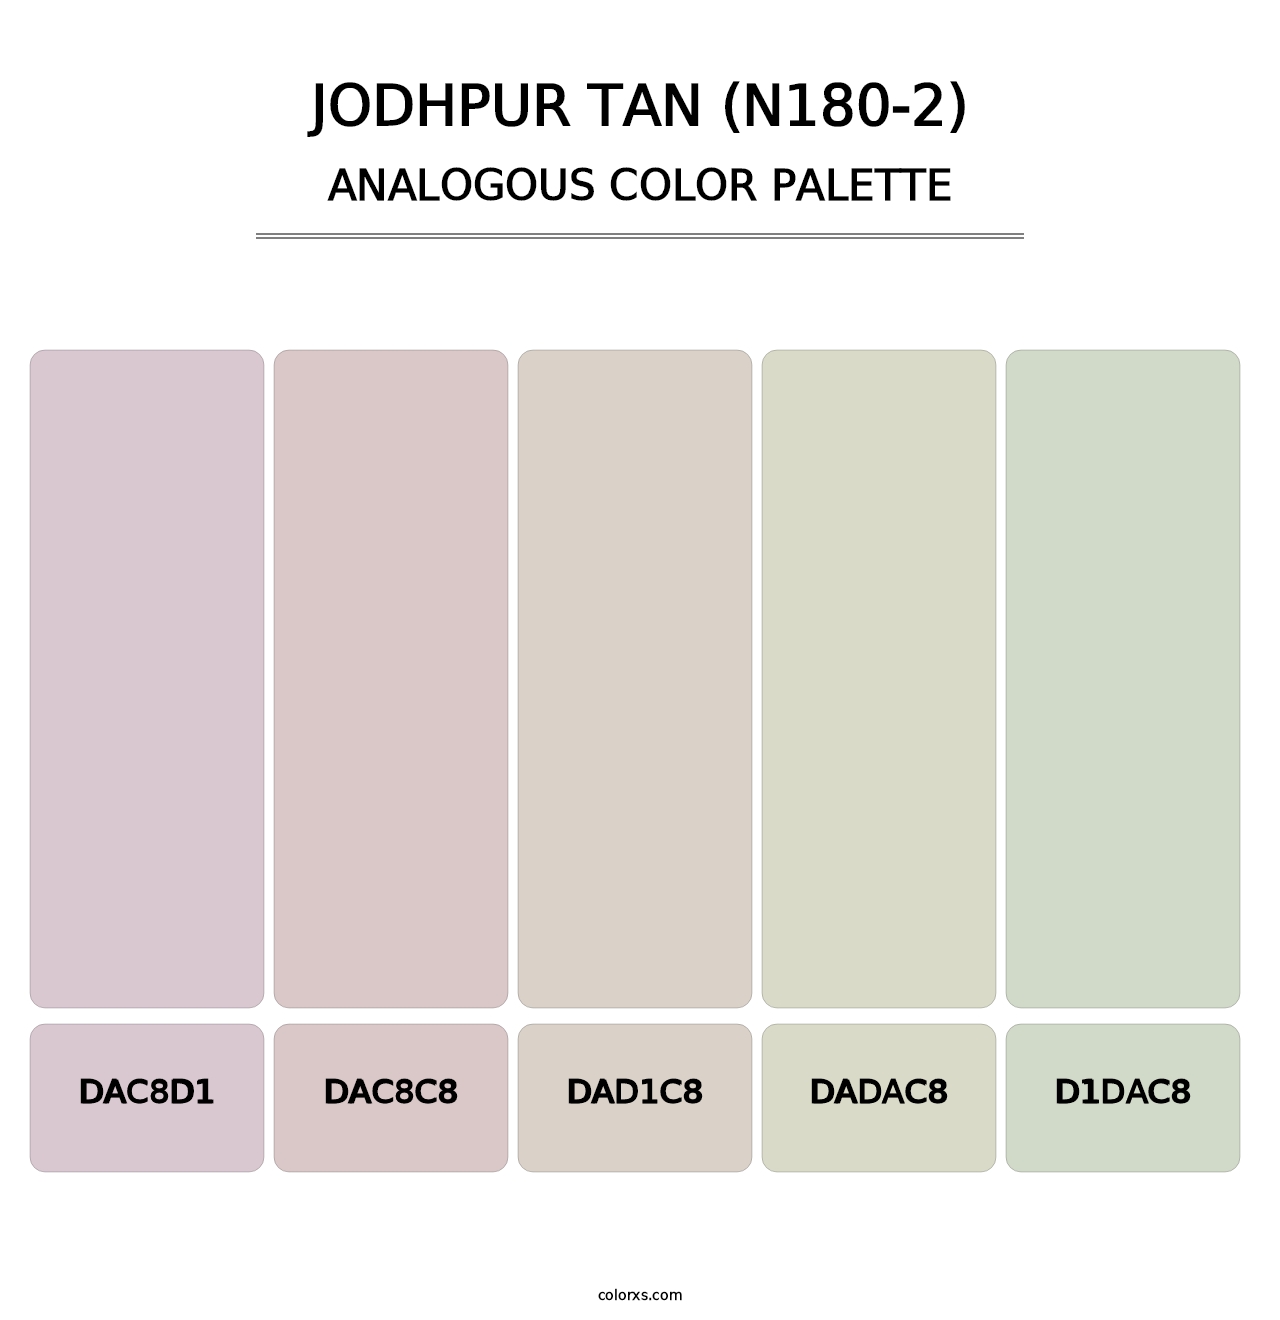 Jodhpur Tan (N180-2) - Analogous Color Palette